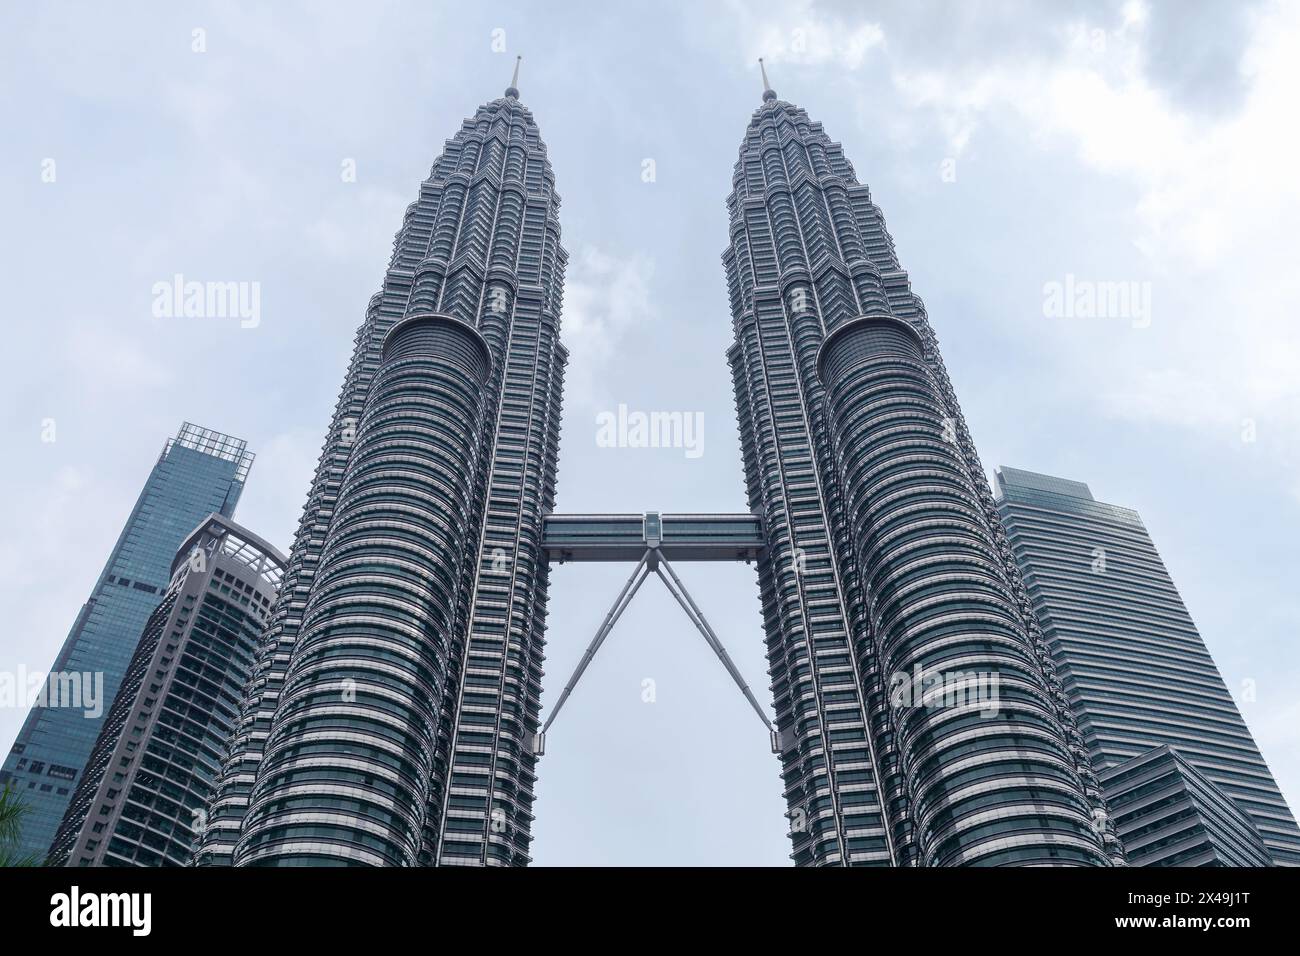 Kuala Lumpur, Malaisie - 25 novembre 2019 : les tours jumelles Petronas sont sous le ciel nuageux. Photo verticale Banque D'Images